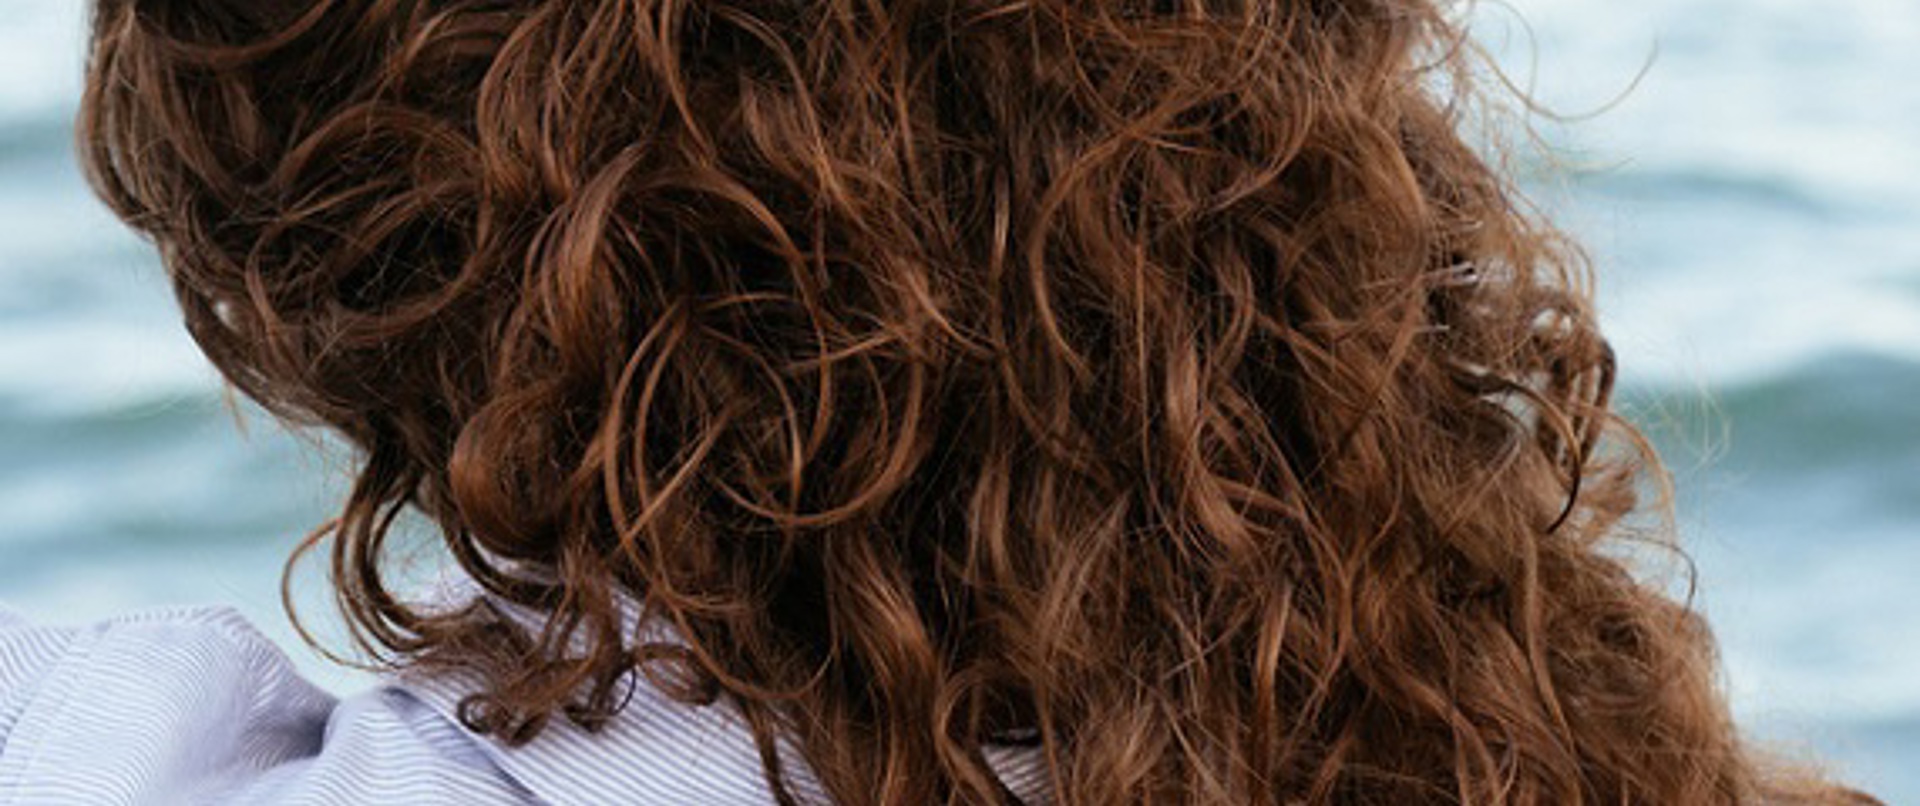 Kıvırcık Saçlara Çözüm: En Doğru Kıvırcık Saç Bakımı Önerileri